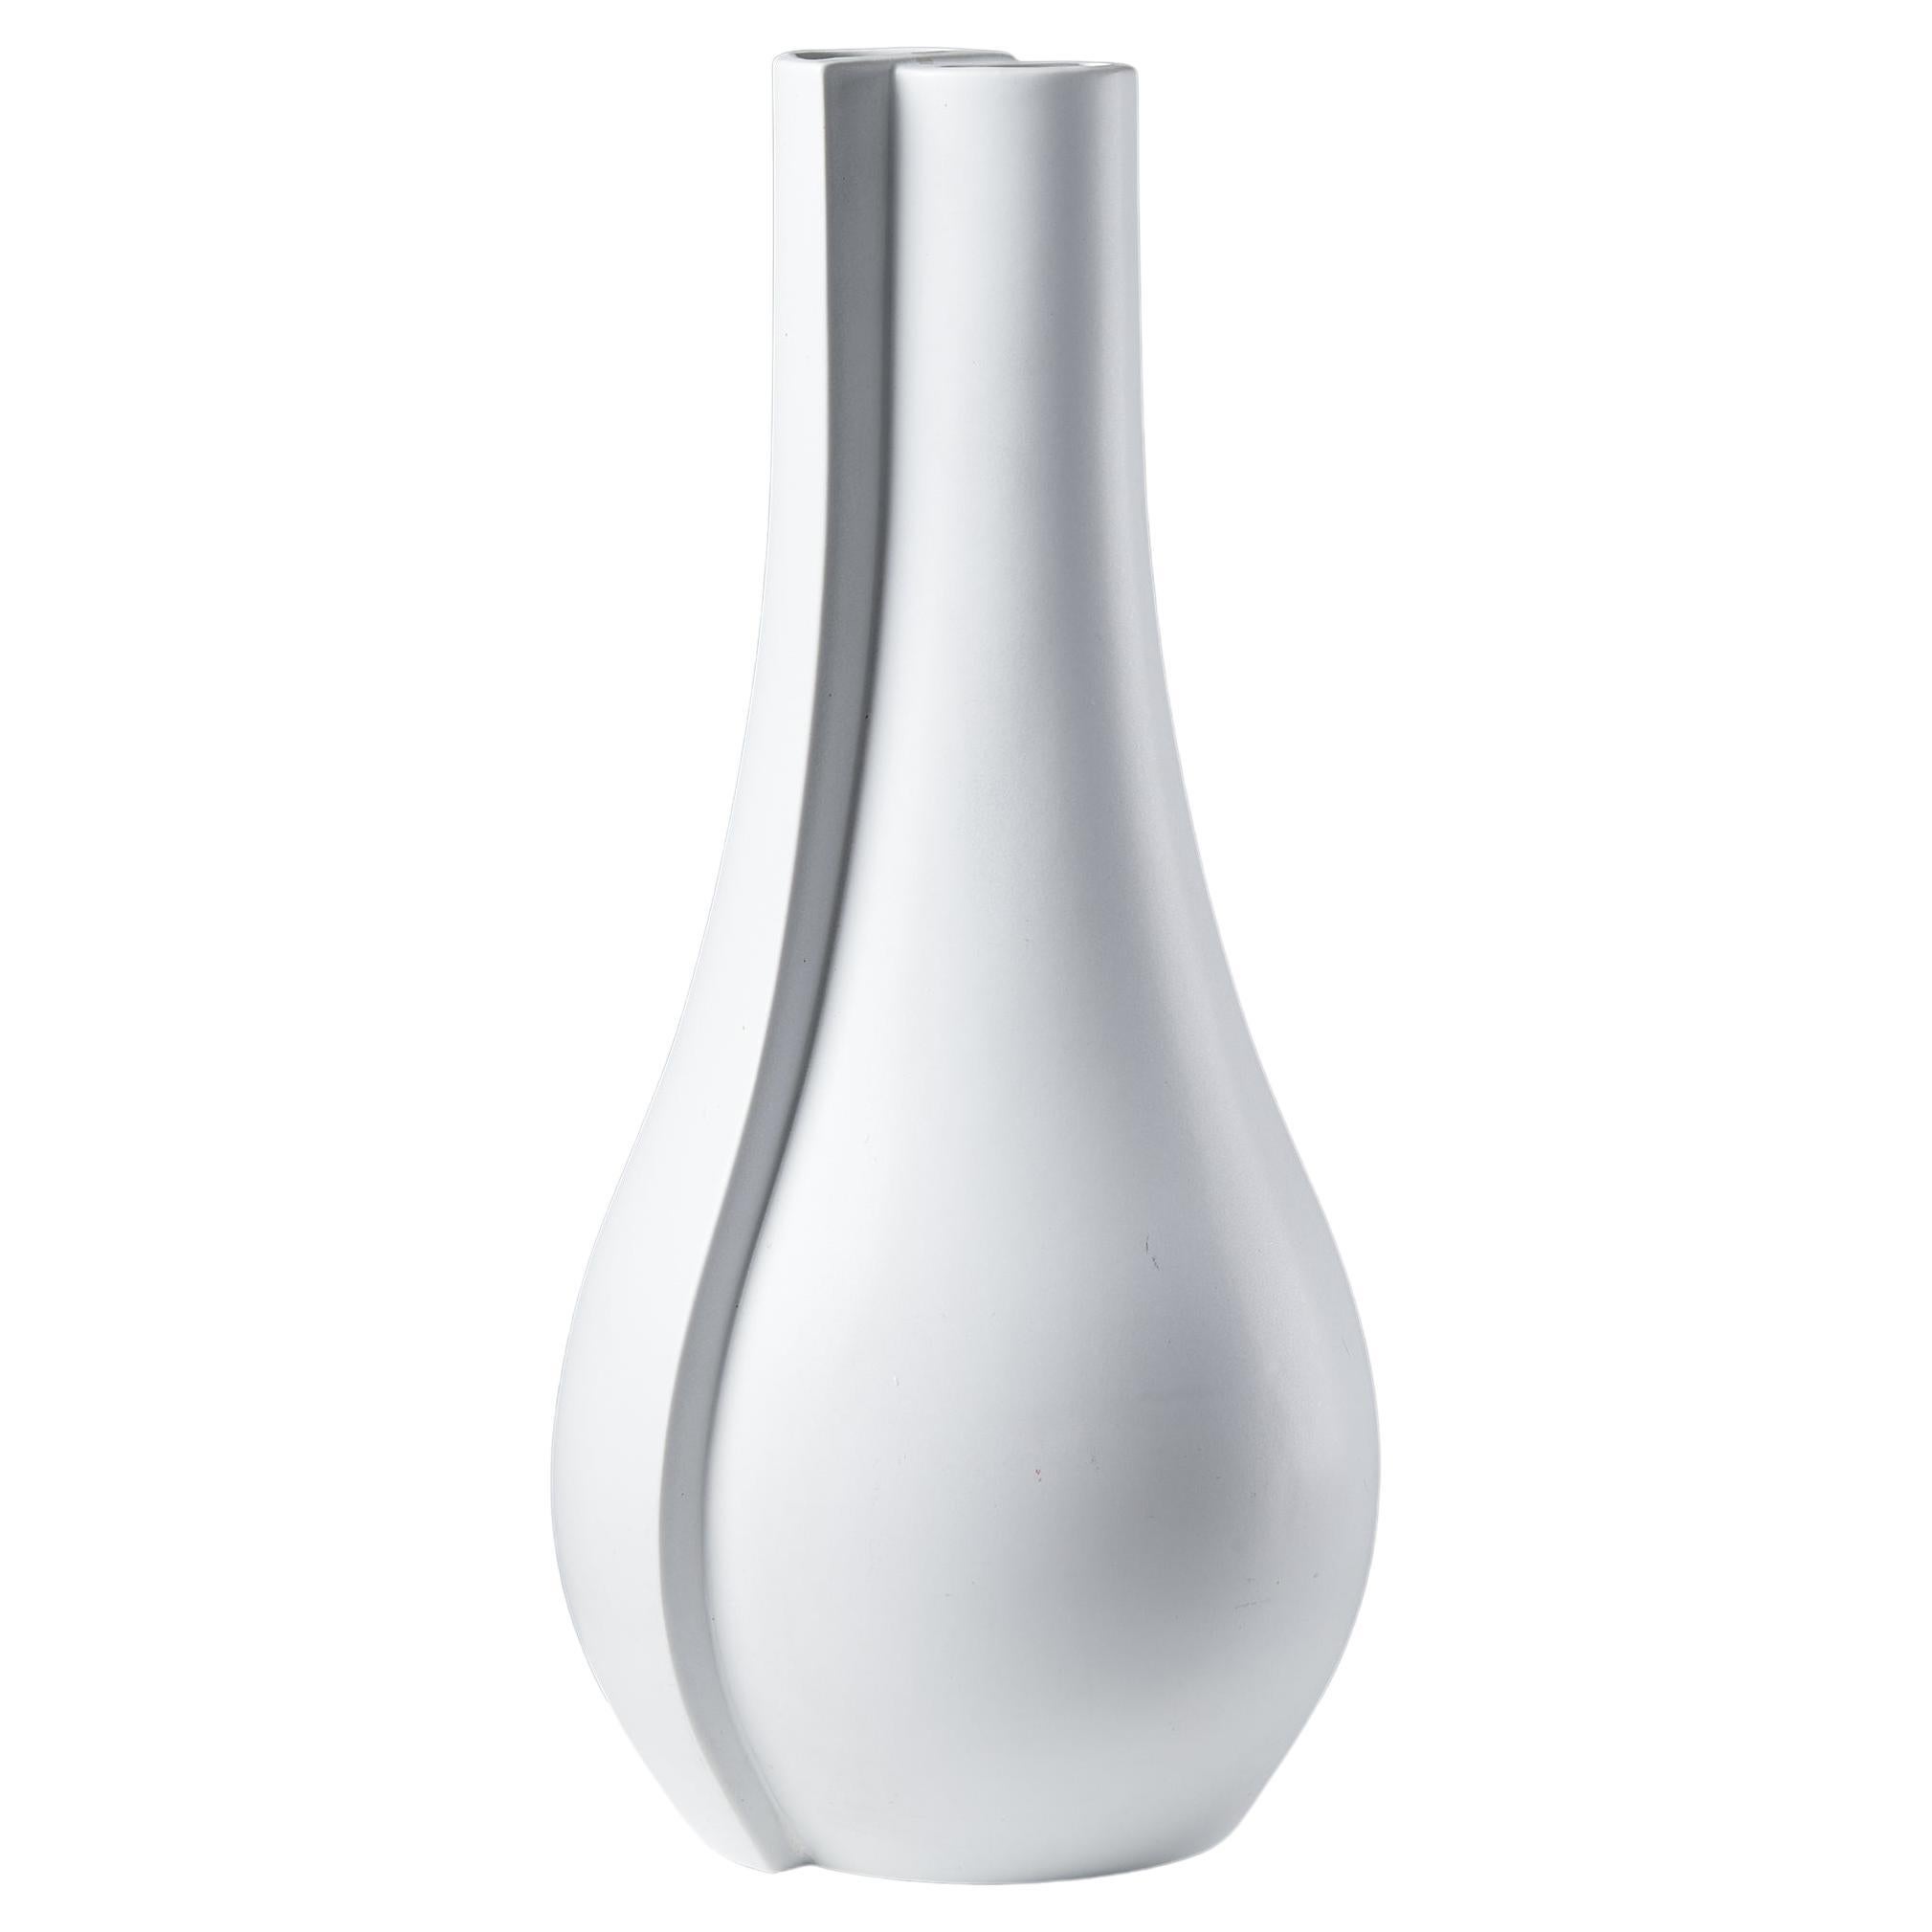 Vase ‘Surrea’ designed by Wilhelm Kåge for Gustavsberg, Sweden, 1940s